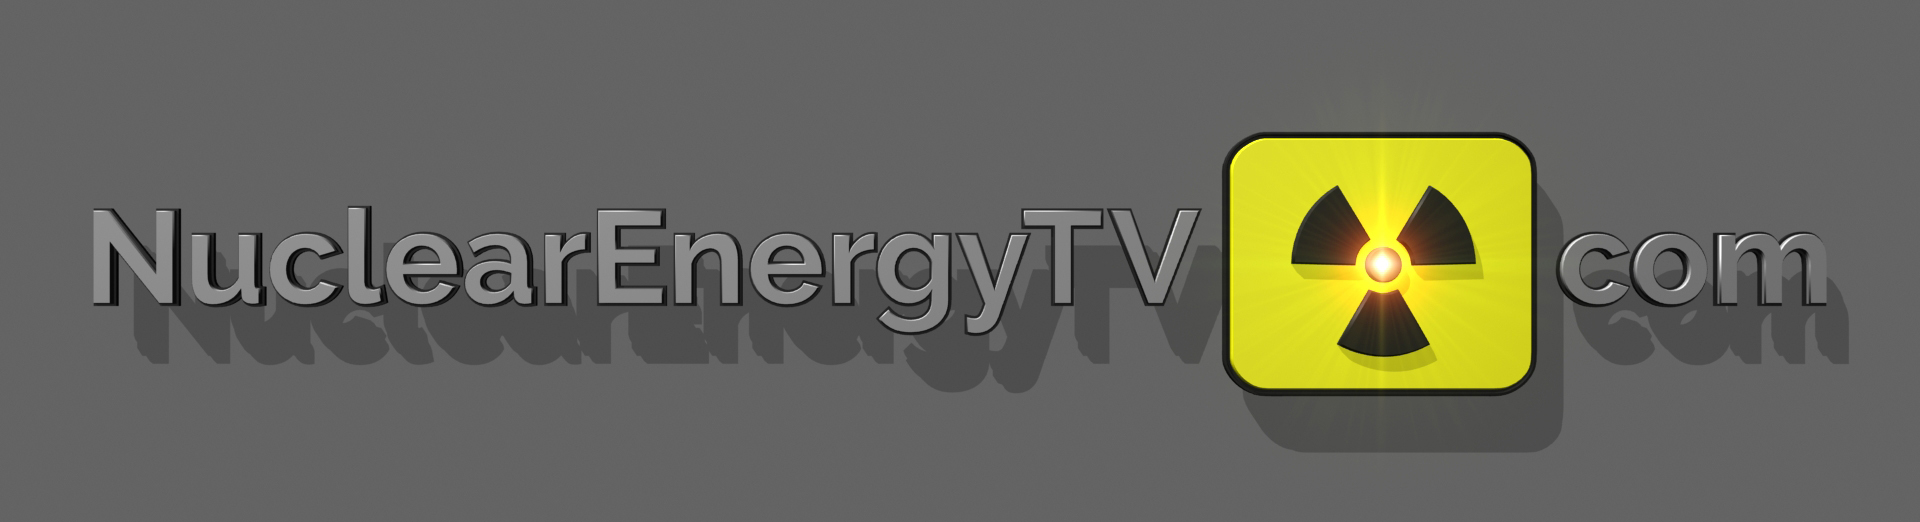 Nuclear Engergy TV